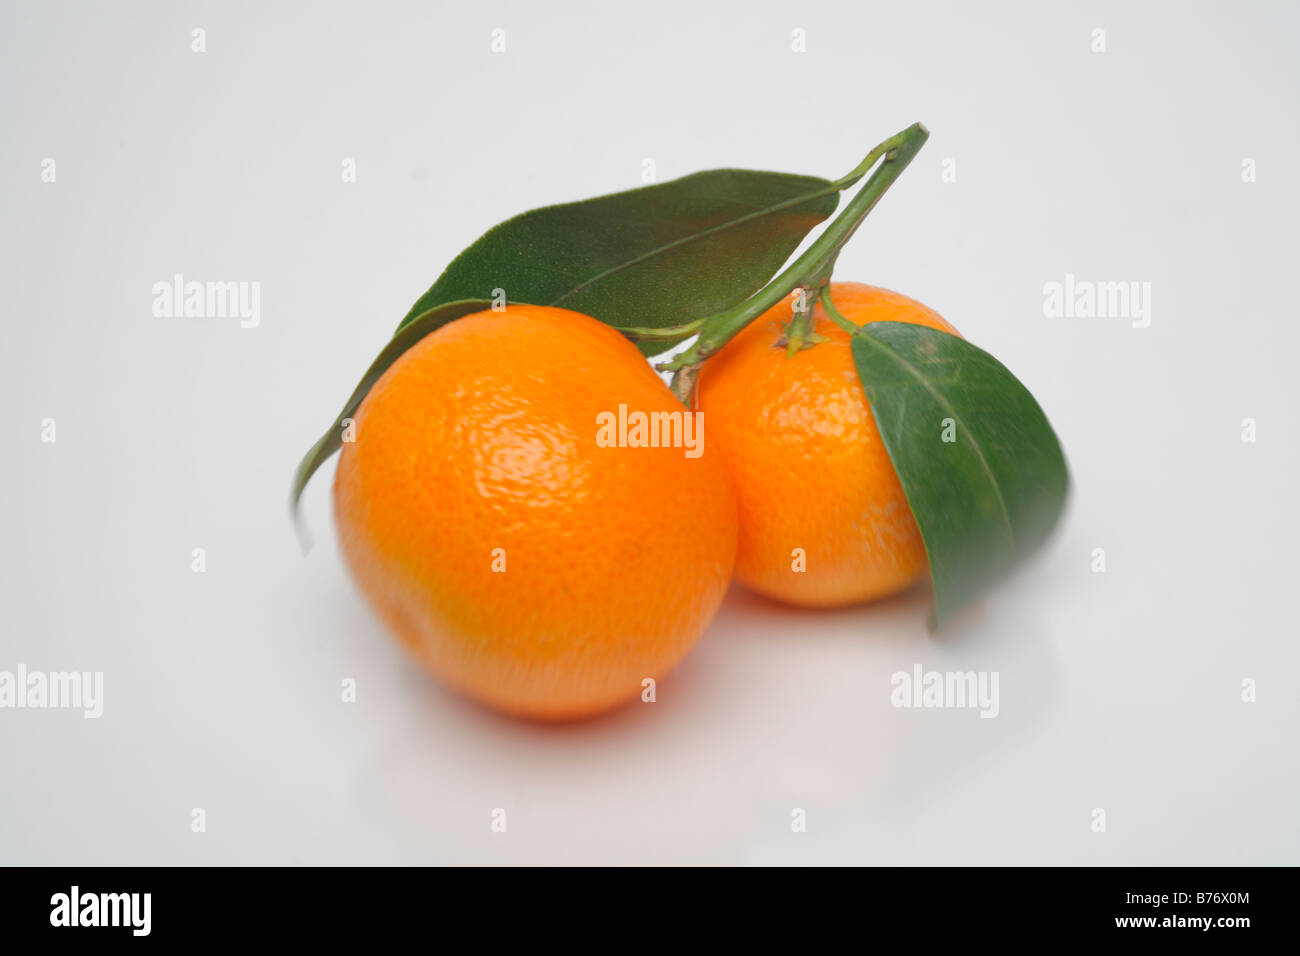 Mandarin, Studio shot, White background Stock Photo